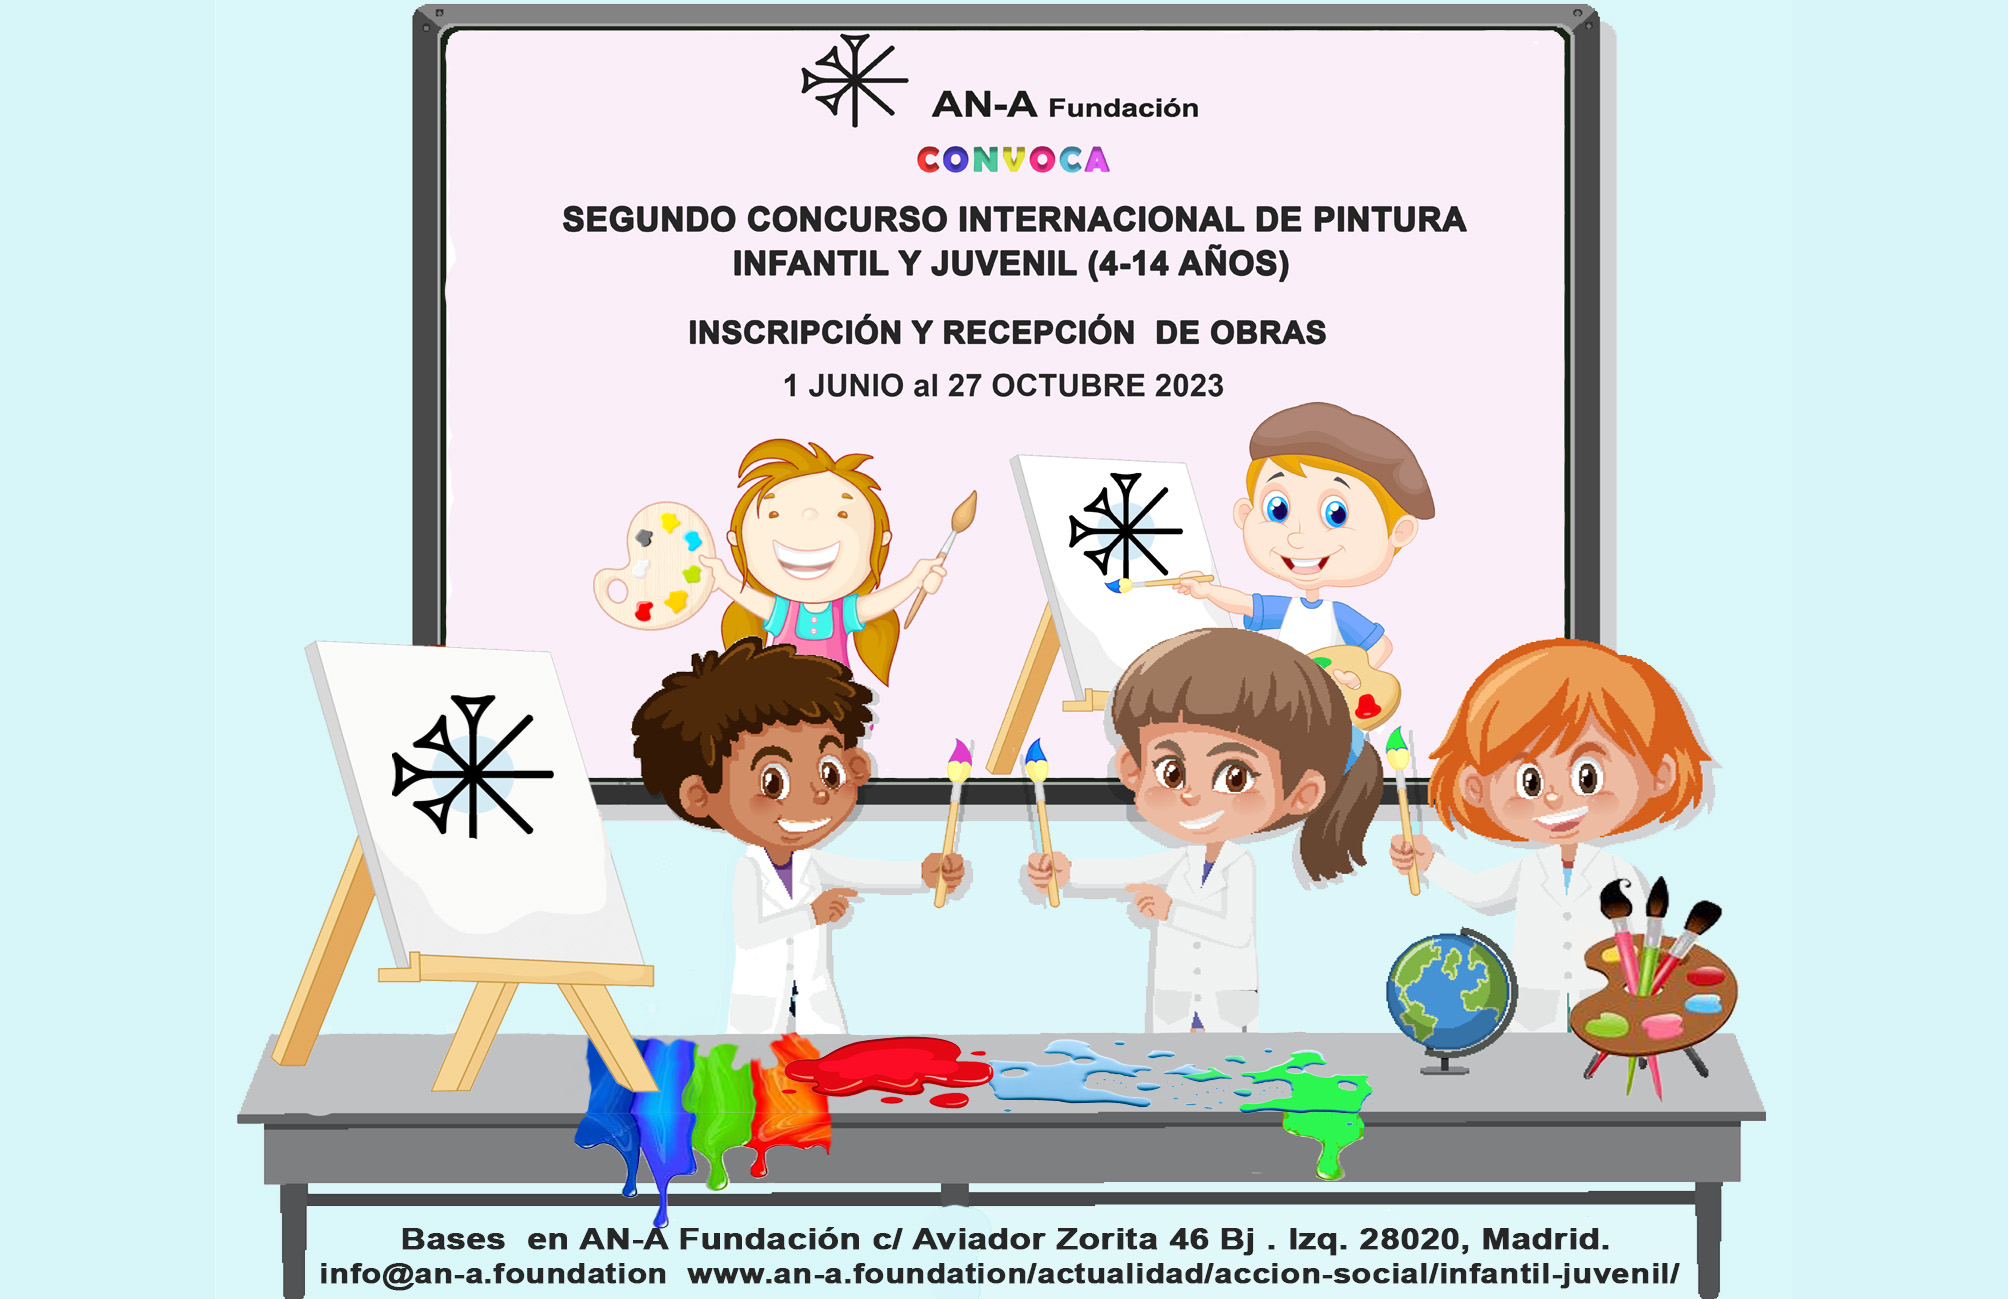 SEGUNDO CONCURSO INTERNACIONAL DE PINTURA INFANTIL Y JUVENIL, AN-A FUNDACIÓN